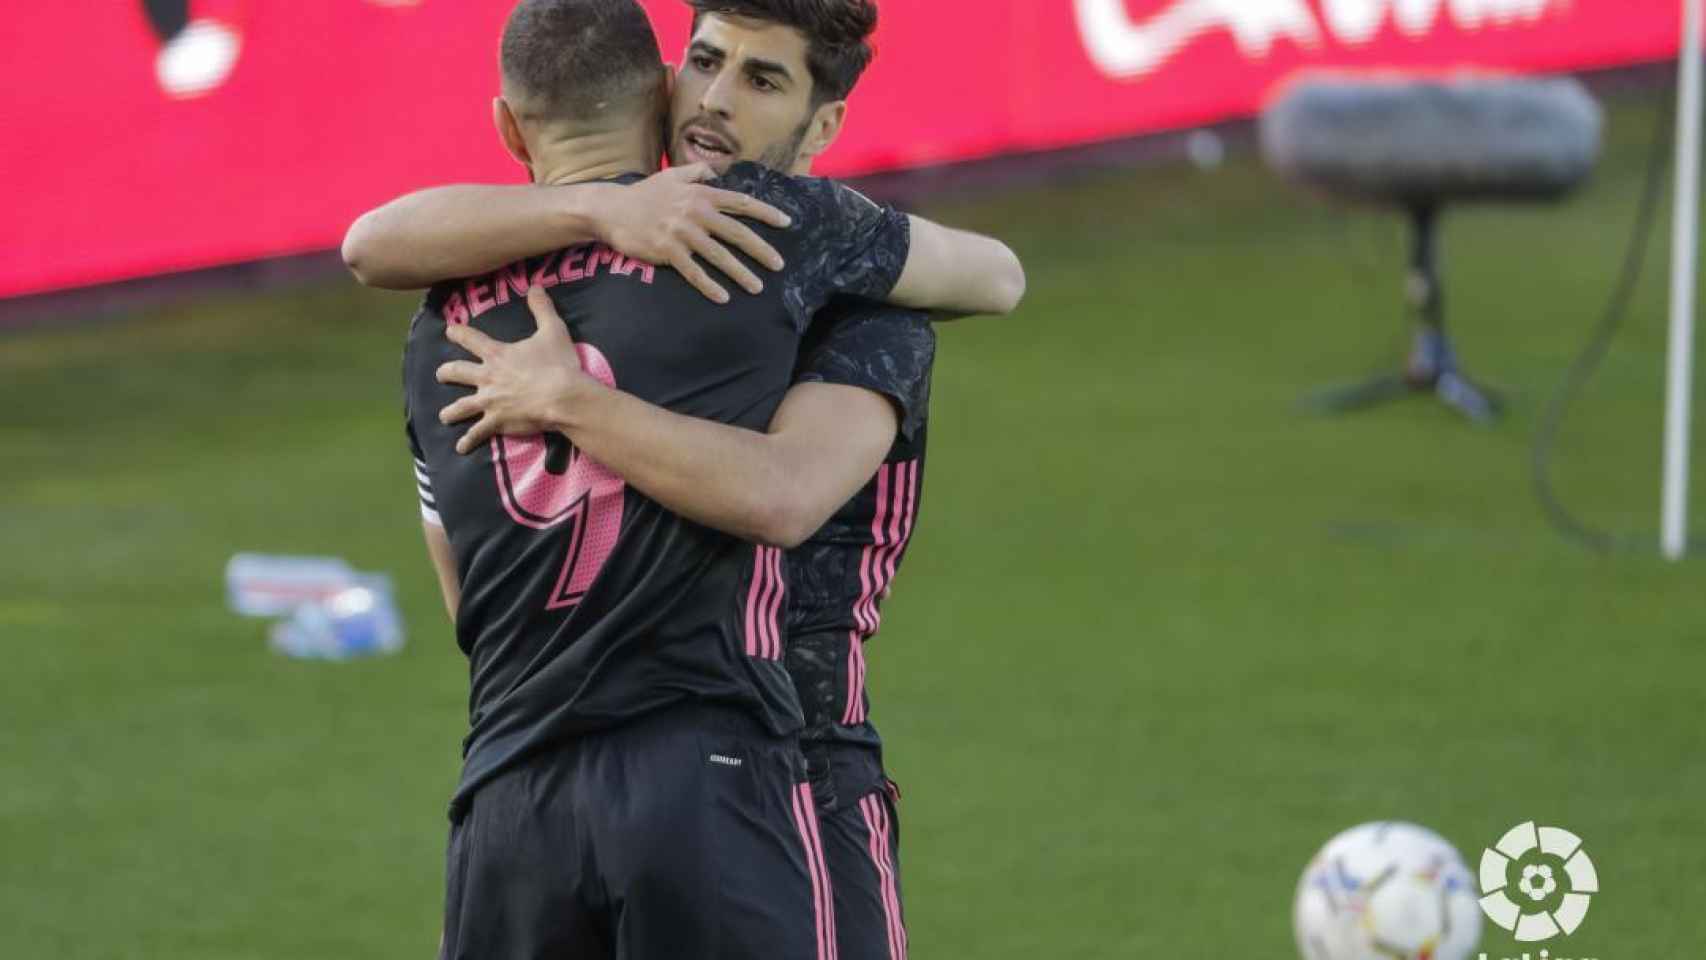 Abrazo entre Benzema y Asensio para celebrar un gol